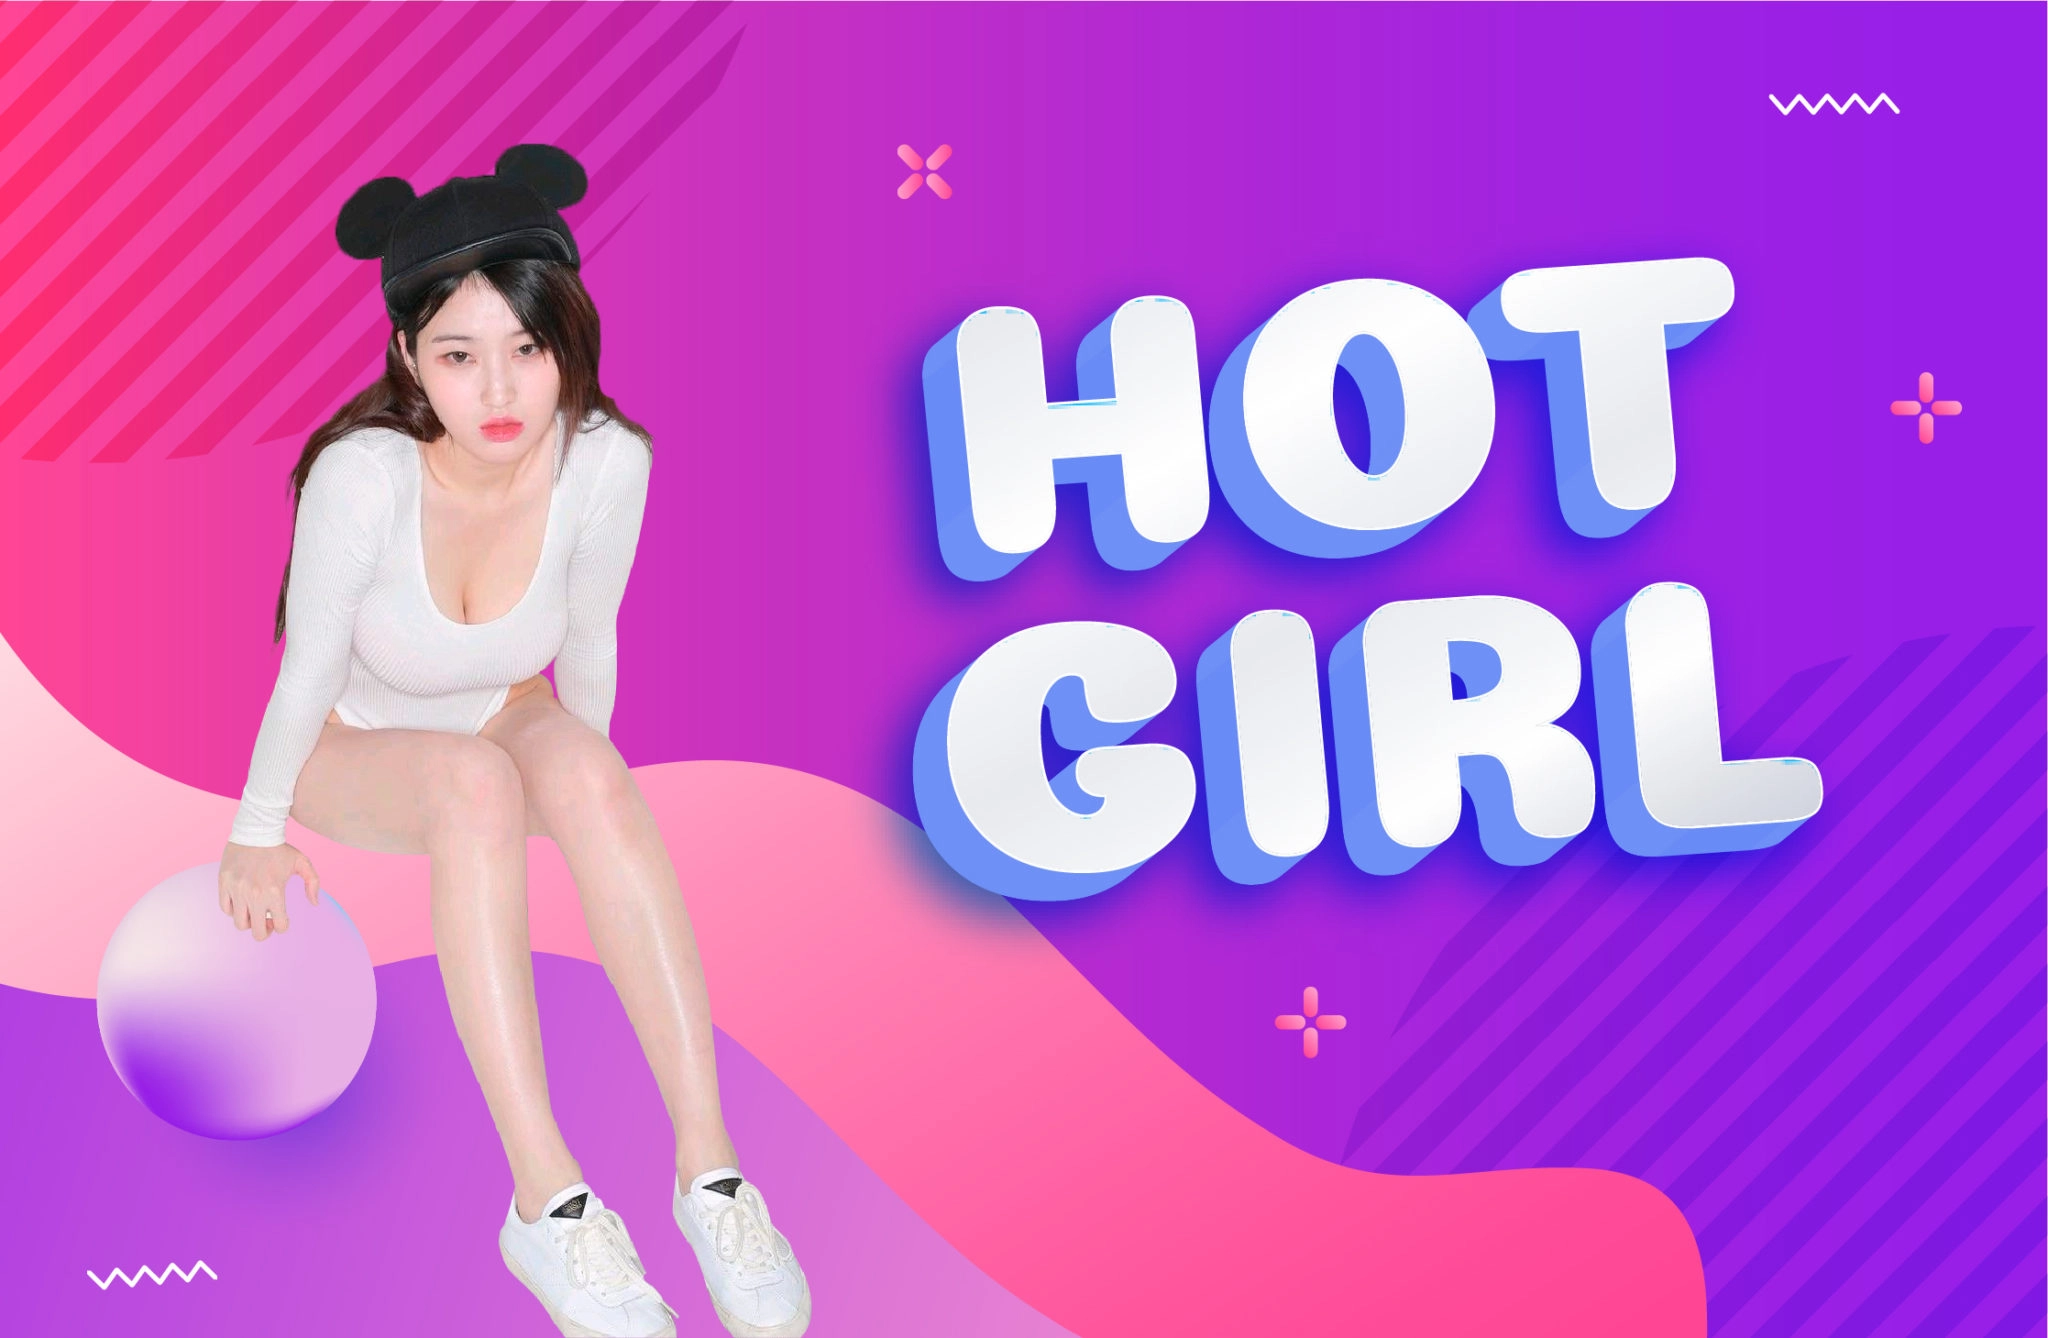 Live stream hot girl